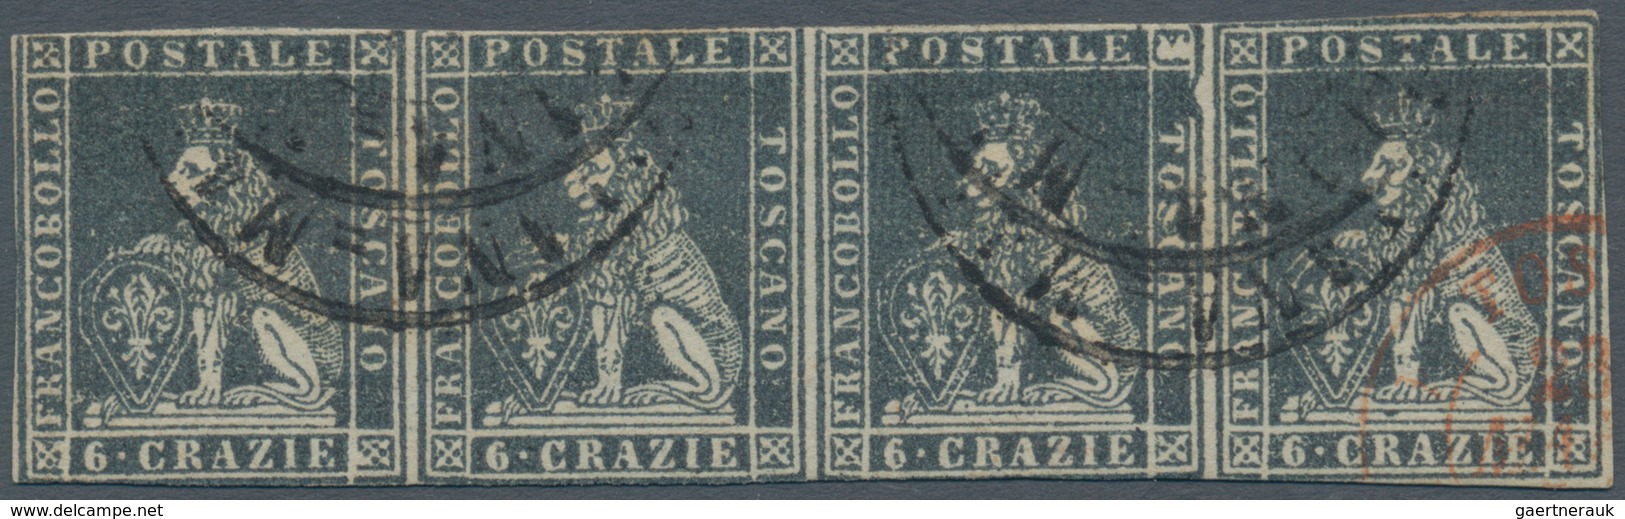 00893 Italien - Altitalienische Staaten: Toscana: 1851, 6 Crarie Dark Grey On Grey Paper, Horizontal Strip - Toskana